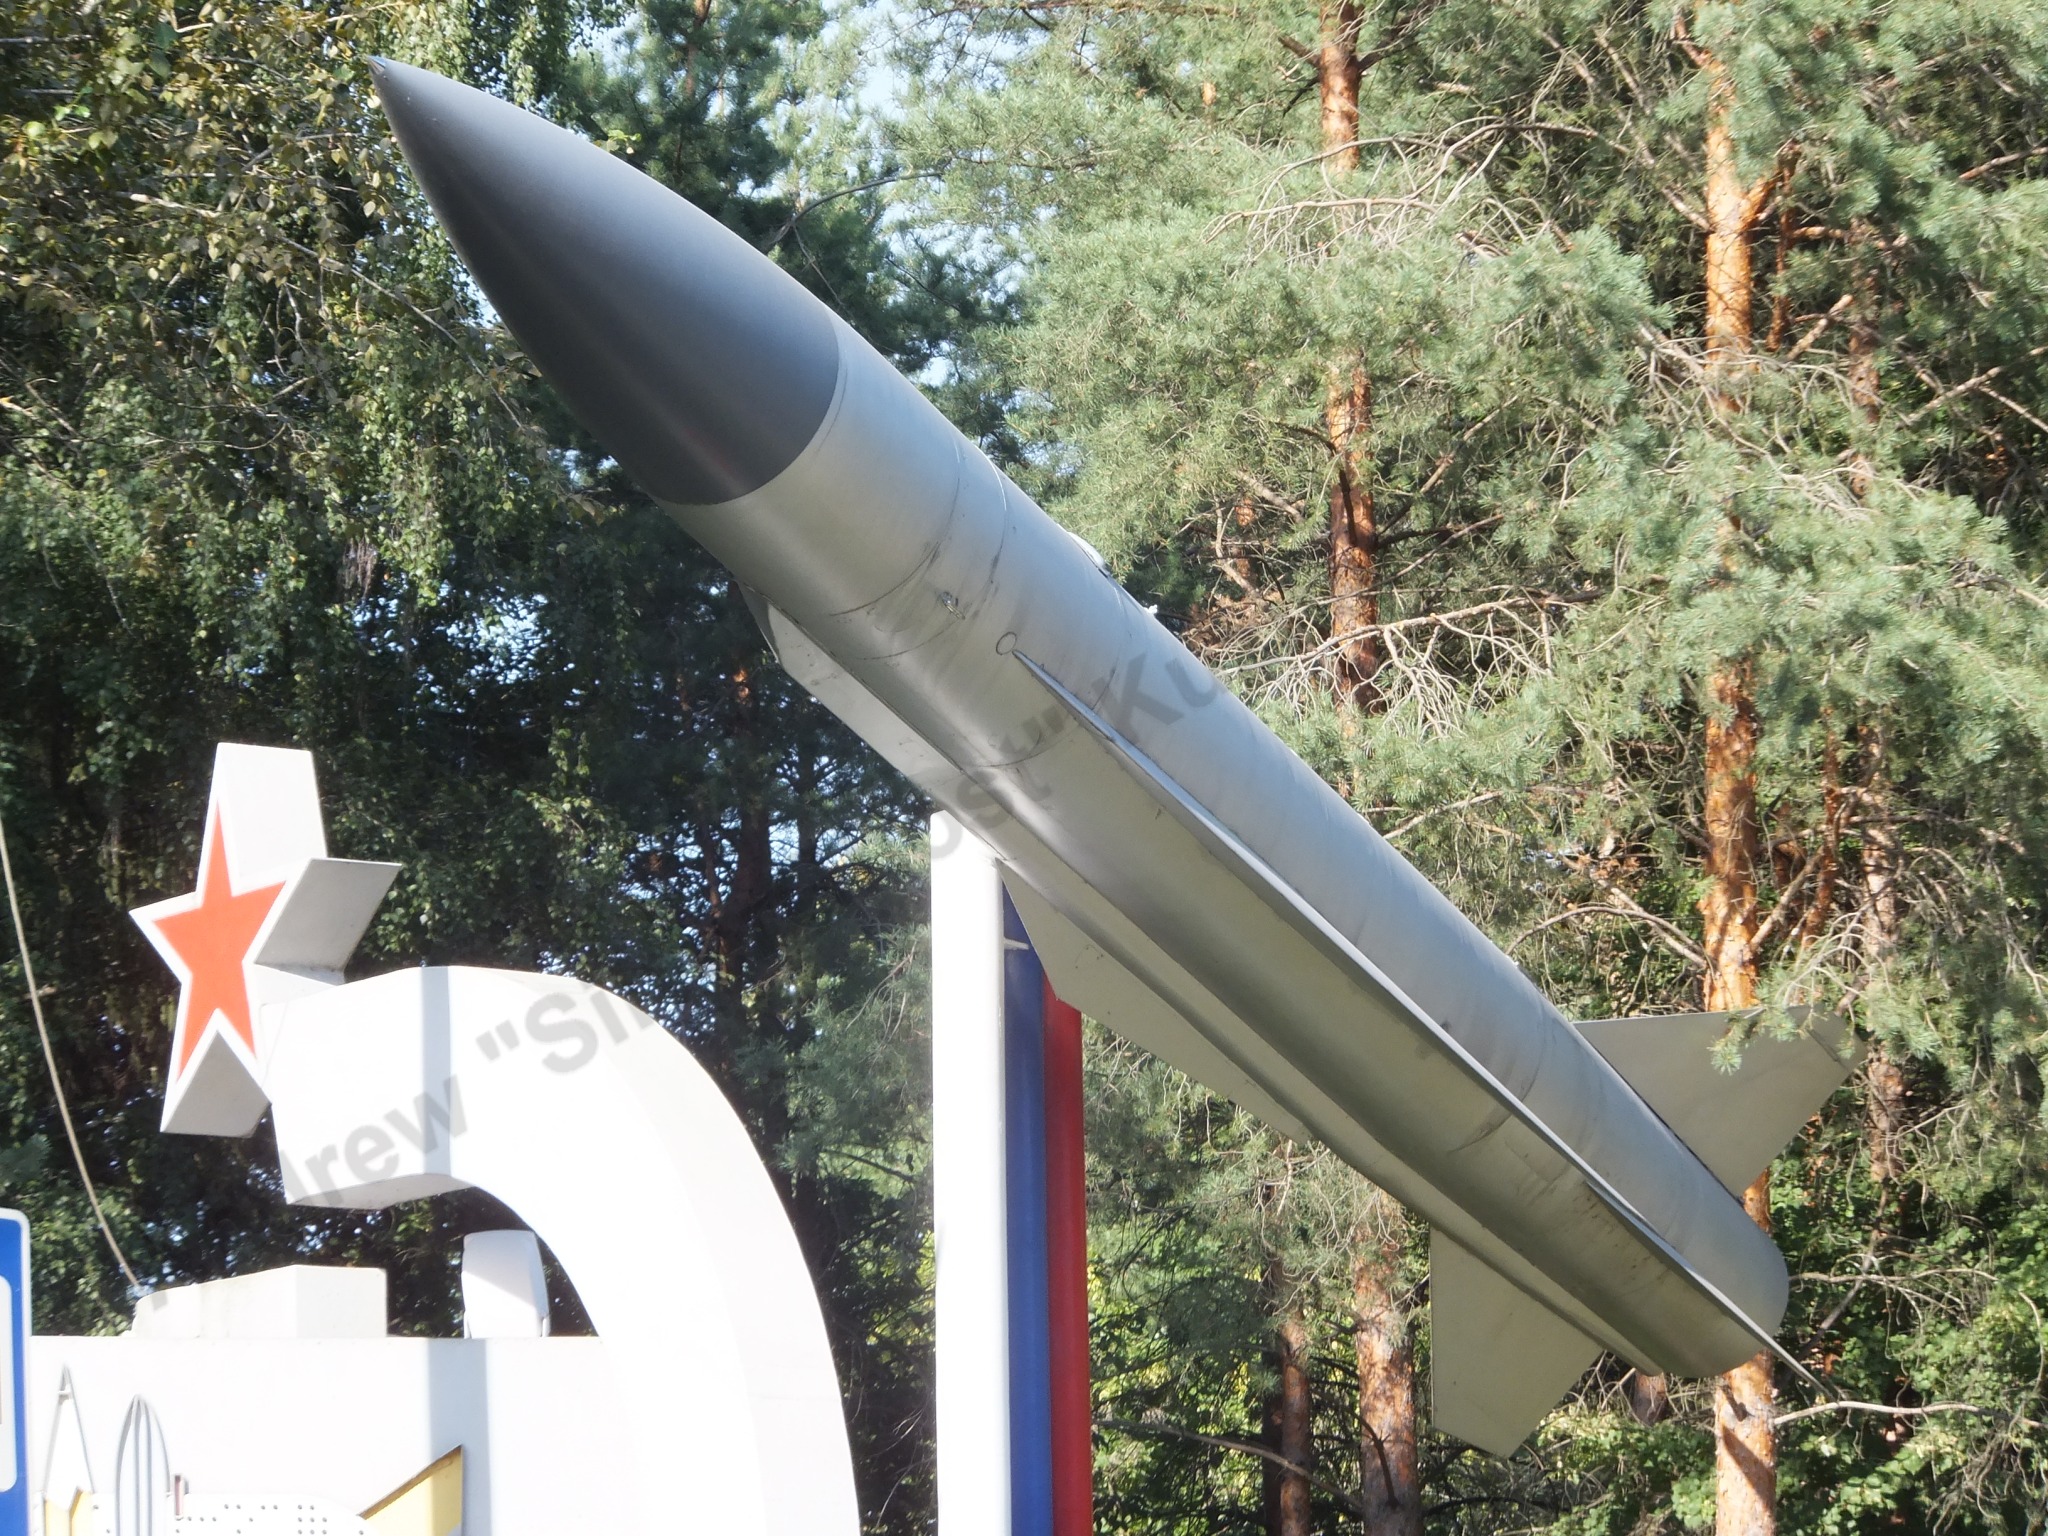 Kh-22 missile_0000.jpg